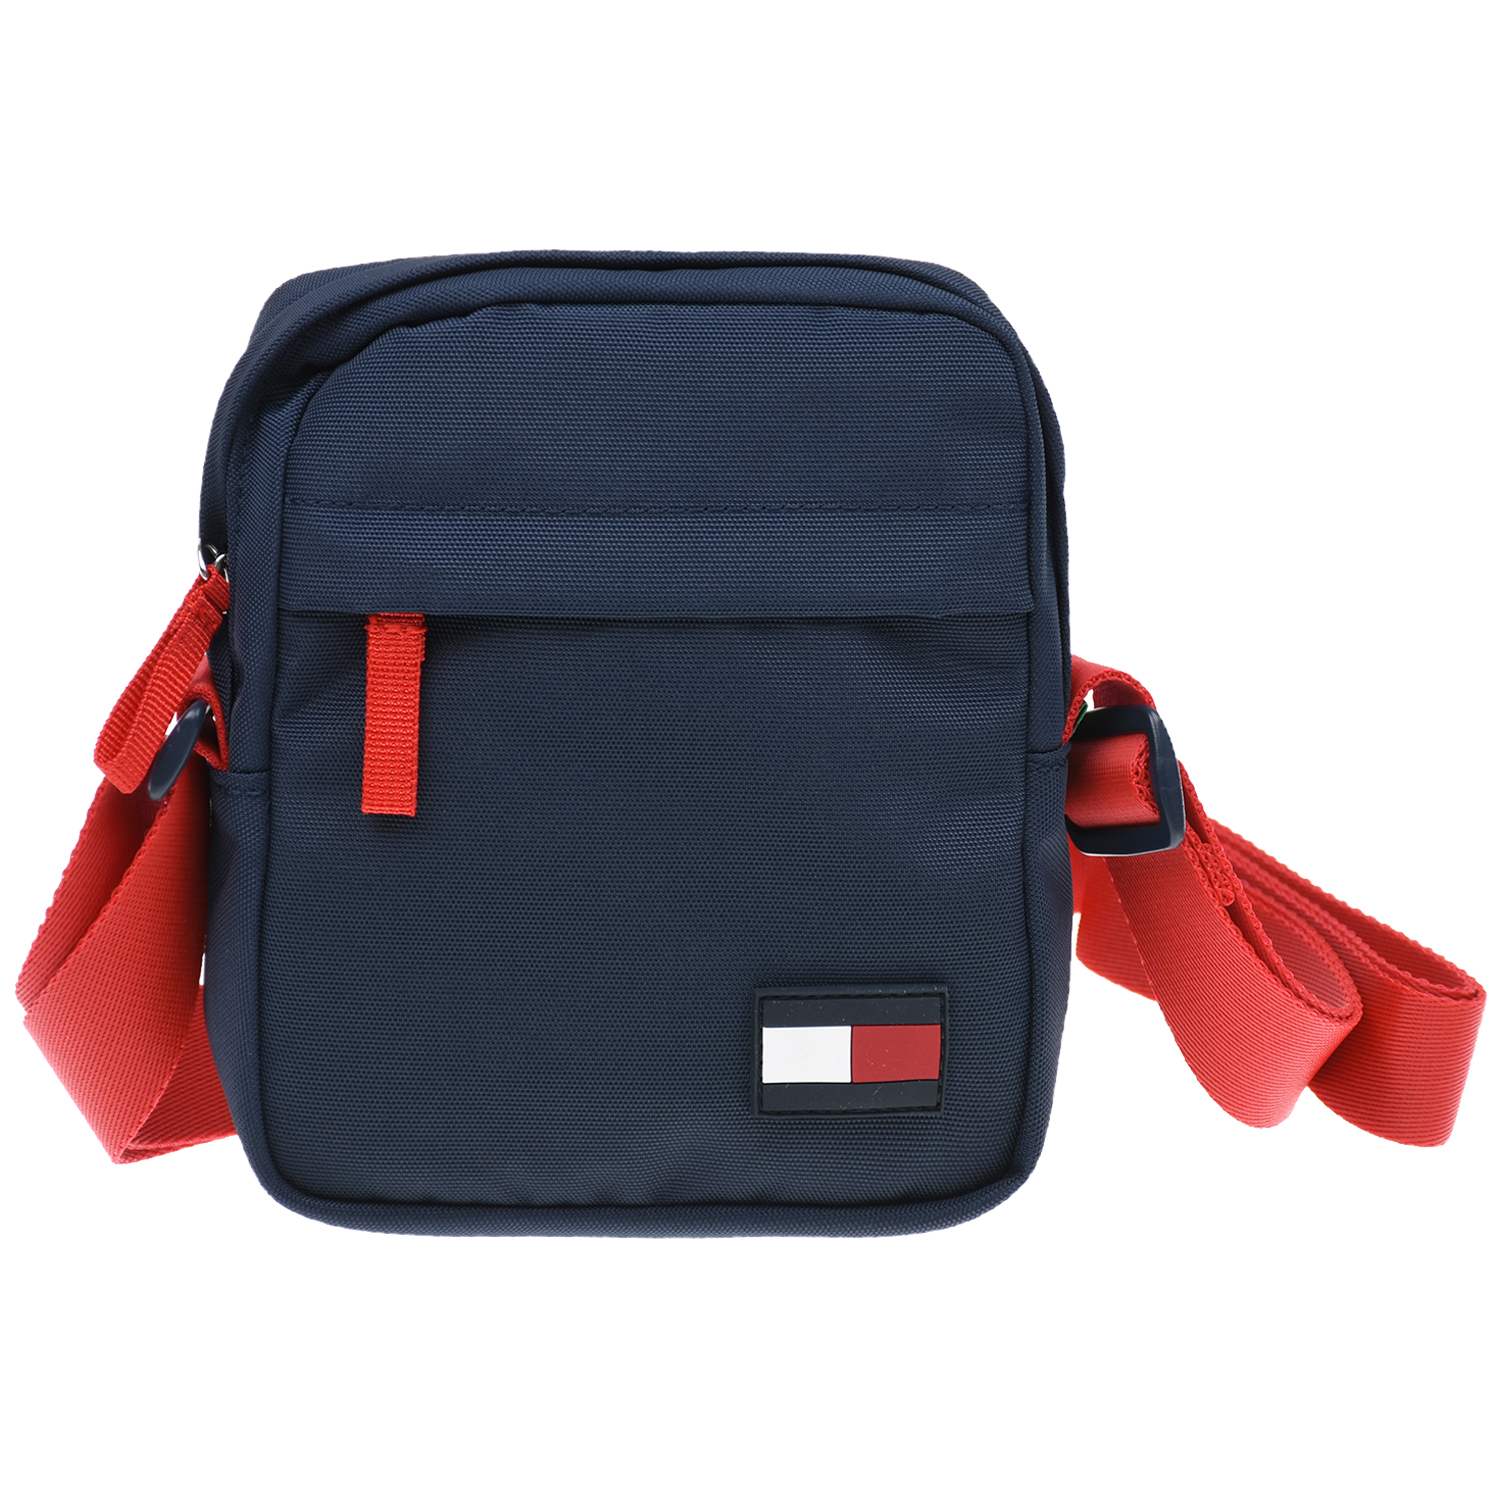 Синяя сумка с красным ремешком 15х3х18 см. Tommy Hilfiger детская, размер unica, цвет синий